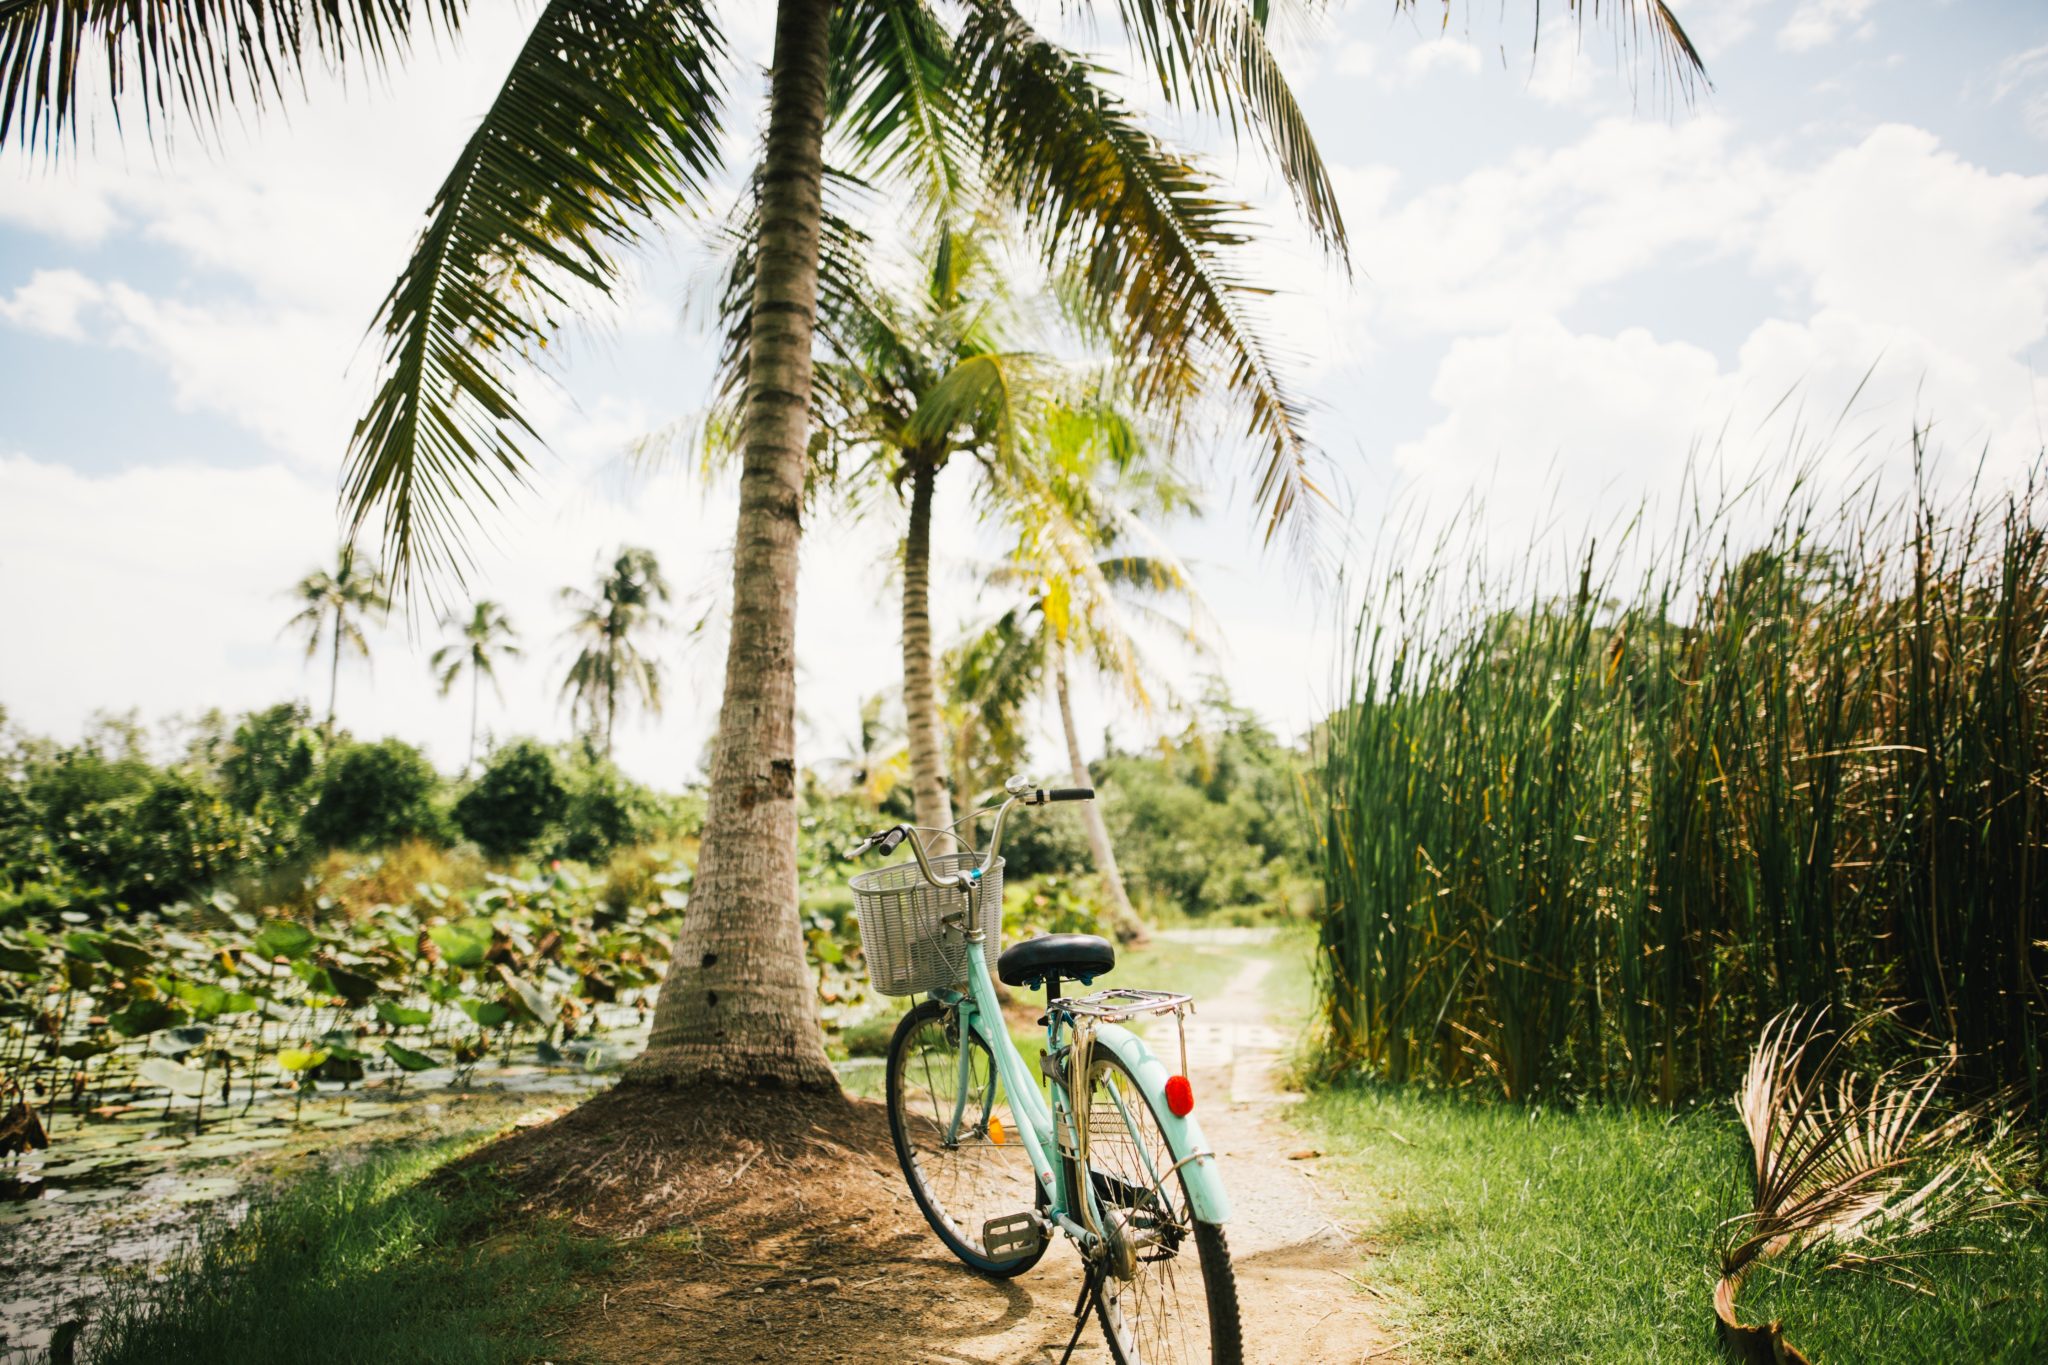 Rower stojący pod palmą przy polach ryżowych, dużo zieleni, słoneczny dzień, niebieskie niebo